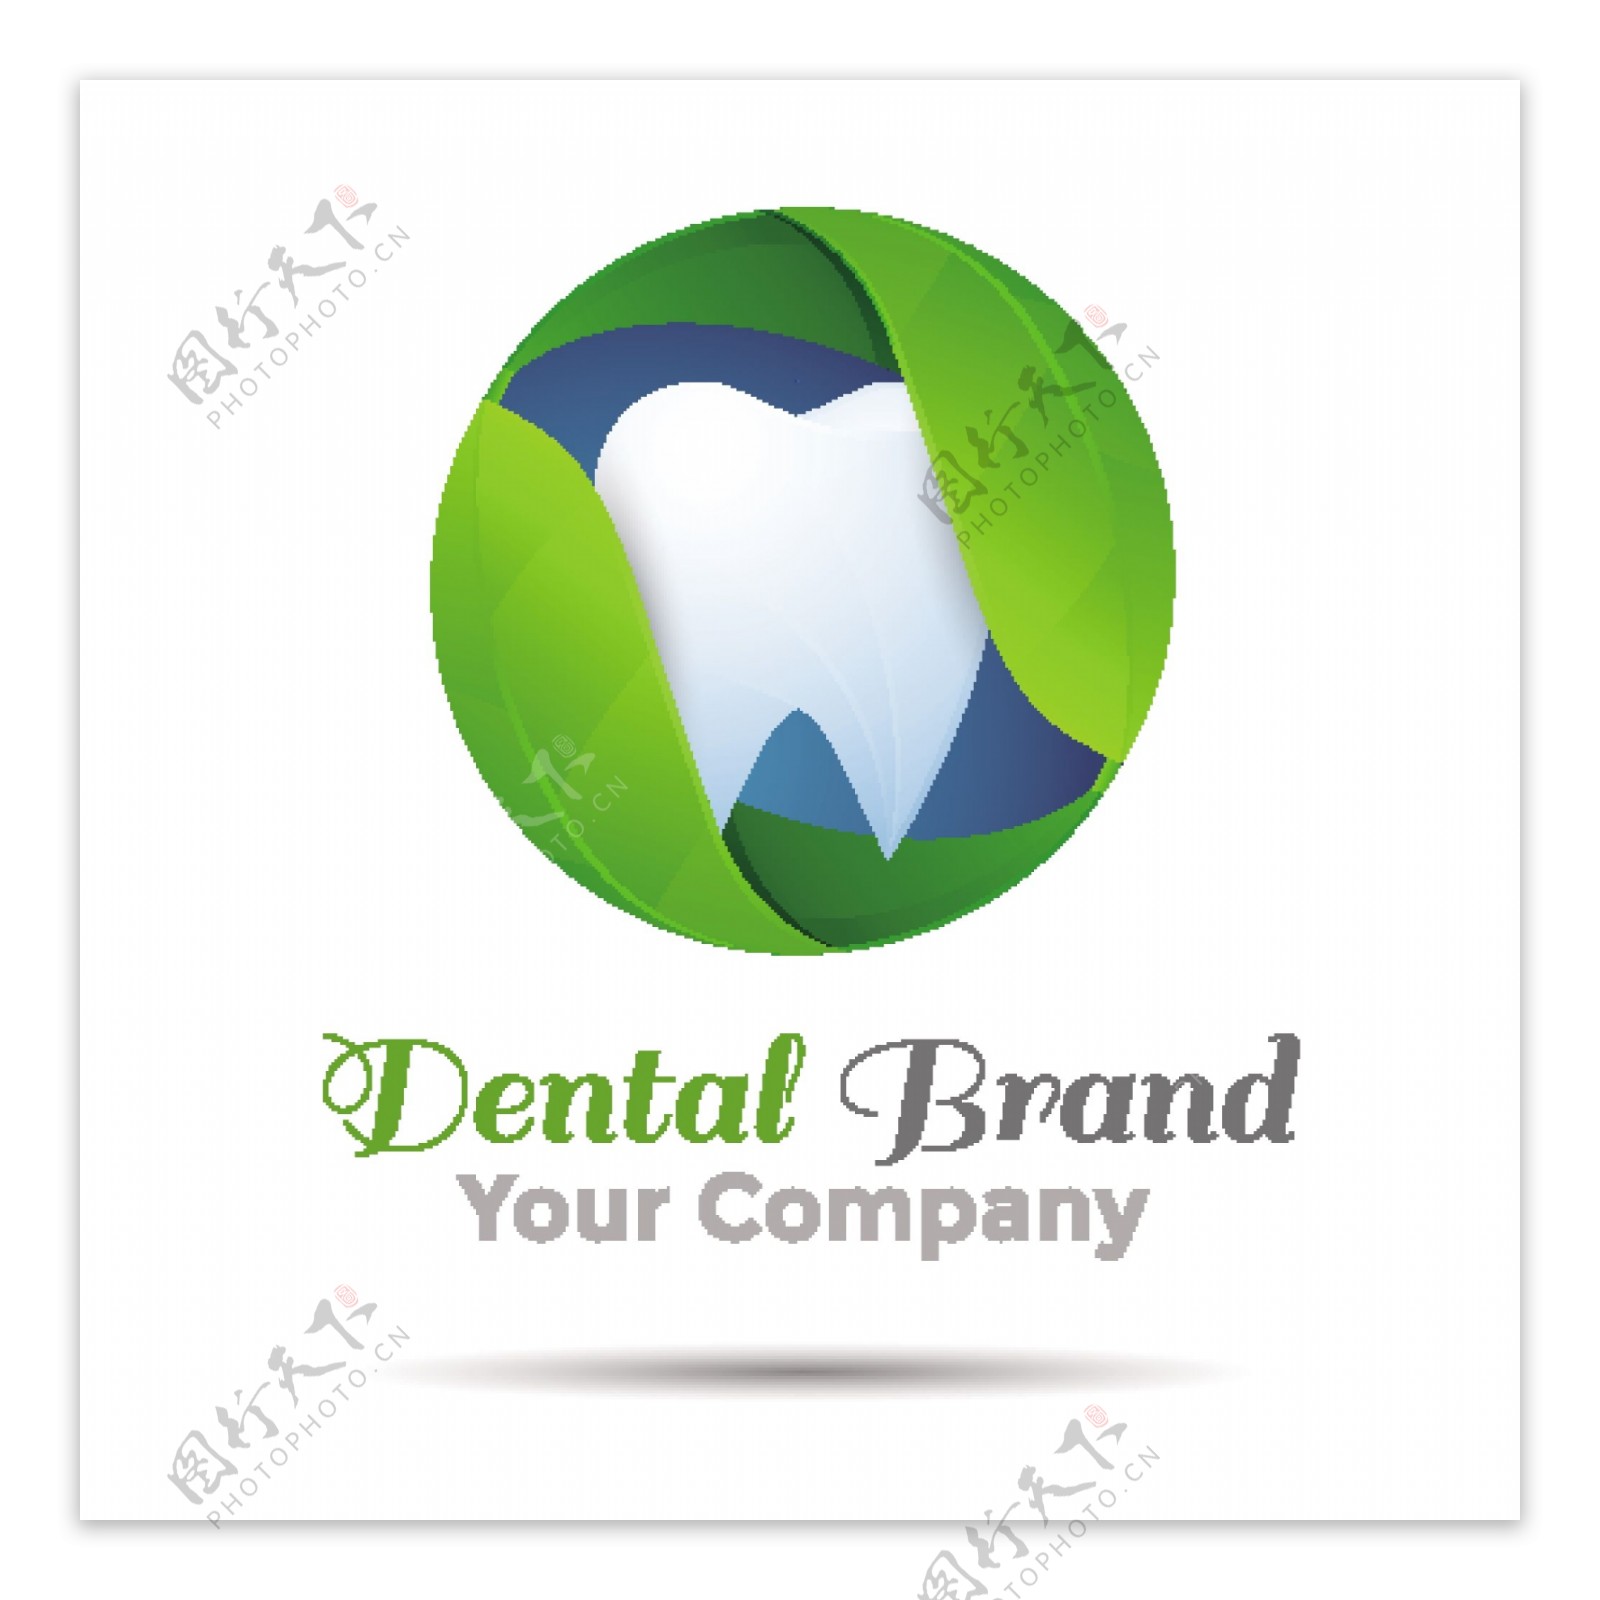 牙科品牌标志设计矢量素材下载